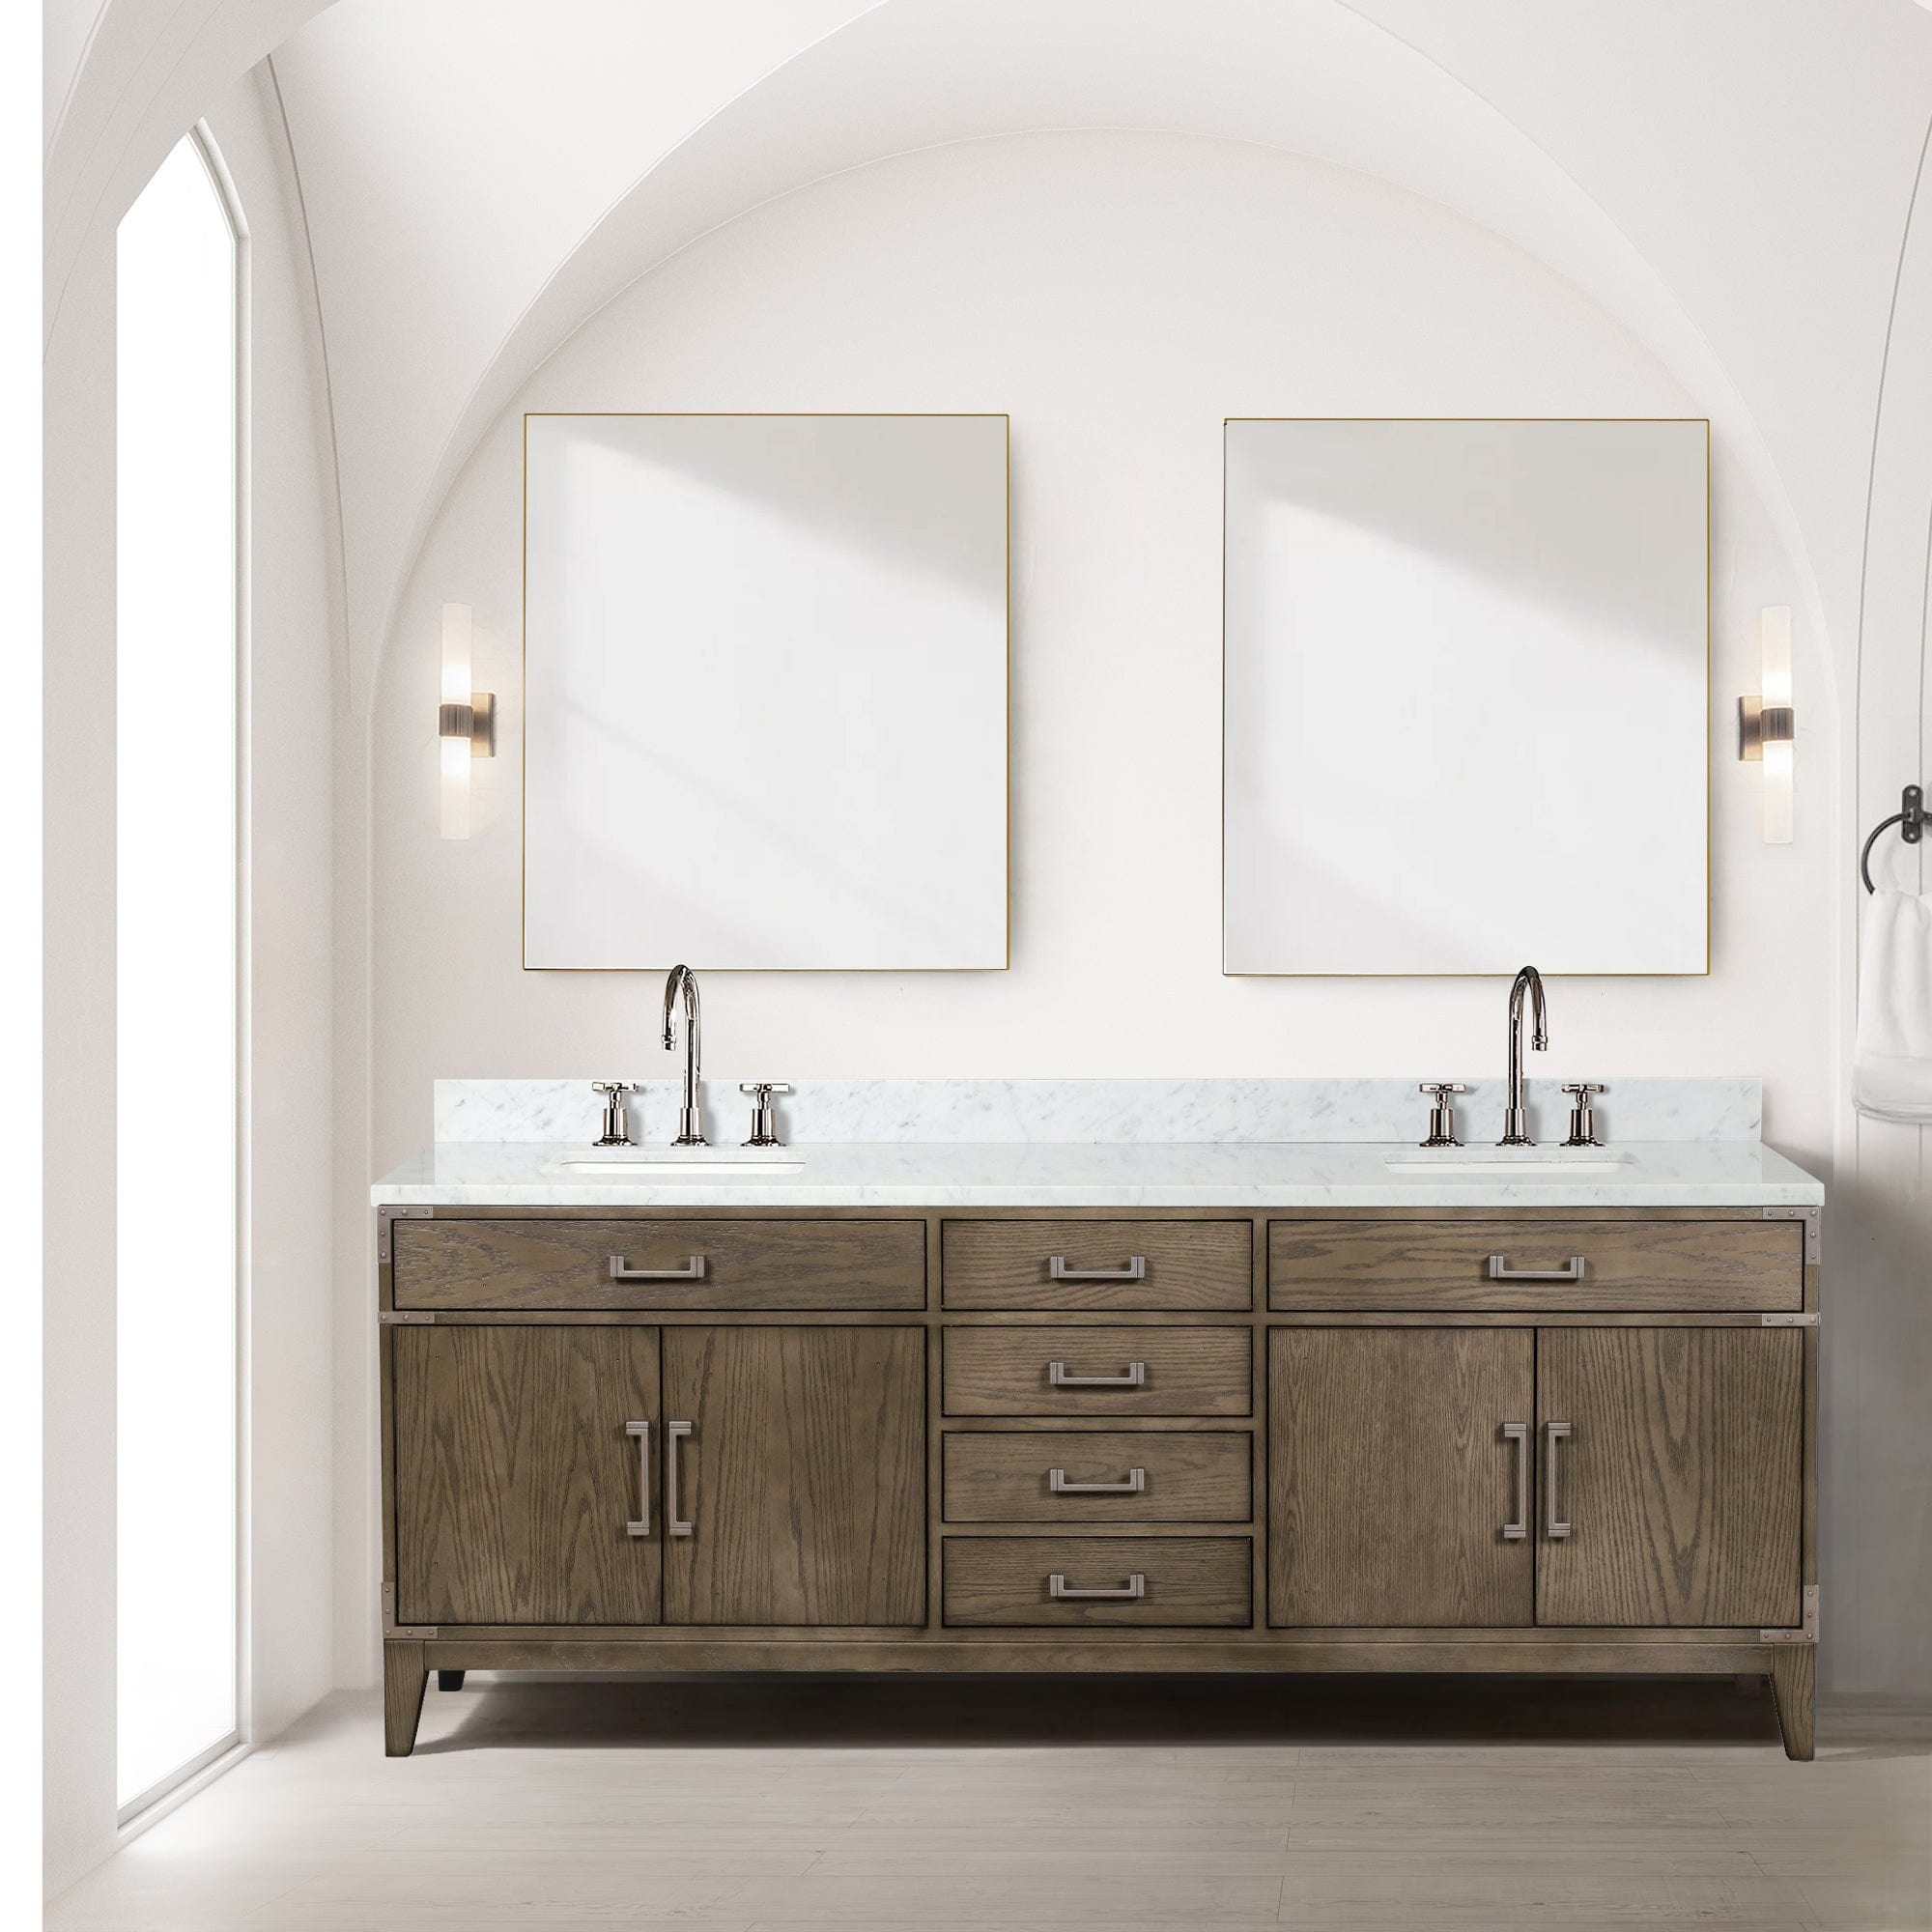 Bell + Modern Bathroom Vanity Harbor Double Bath Vanity